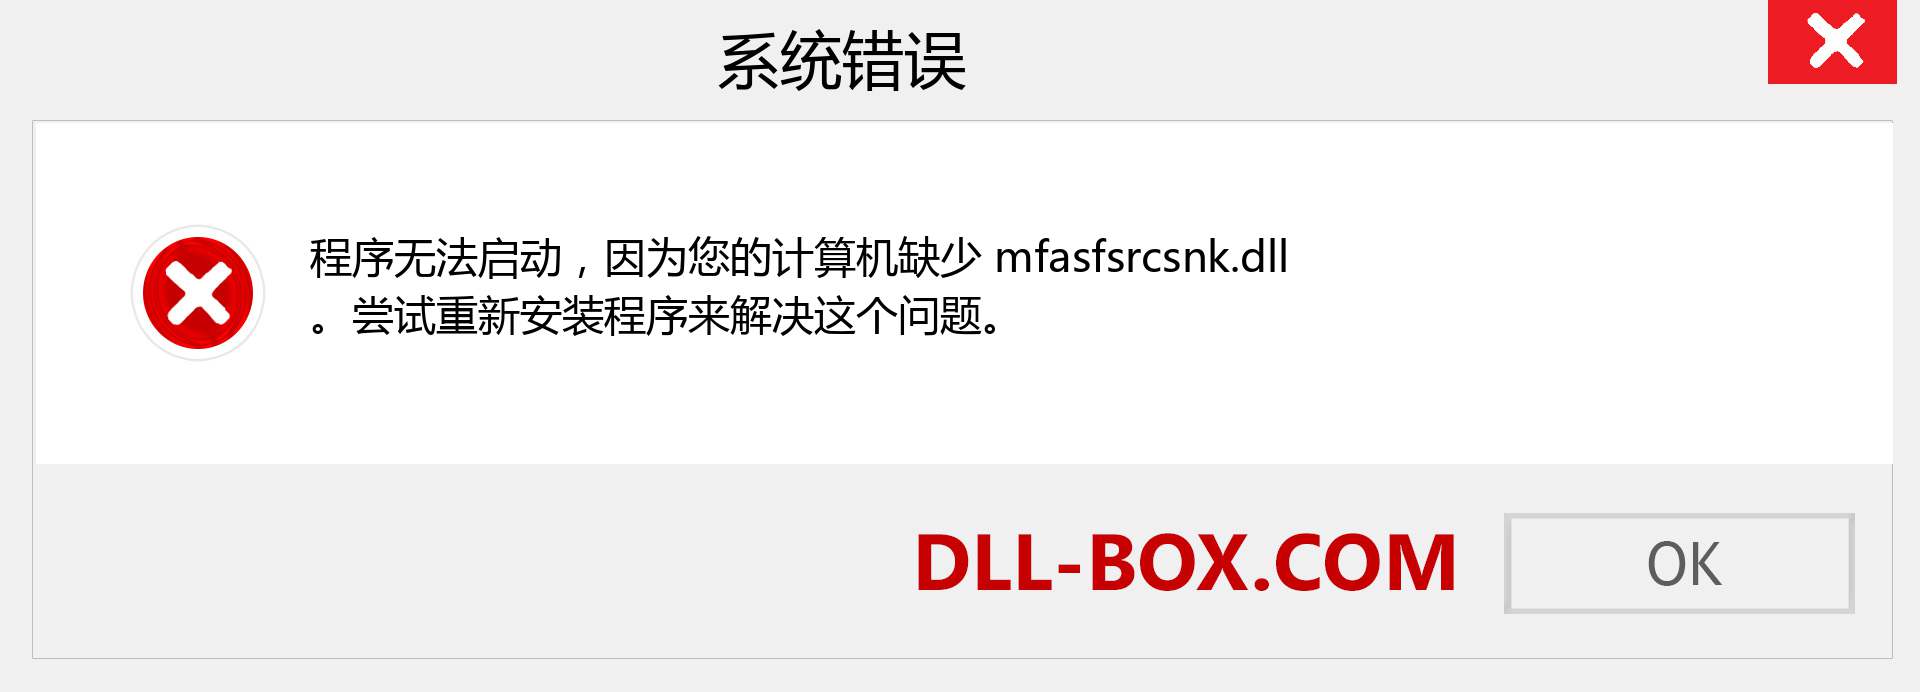 mfasfsrcsnk.dll 文件丢失？。 适用于 Windows 7、8、10 的下载 - 修复 Windows、照片、图像上的 mfasfsrcsnk dll 丢失错误